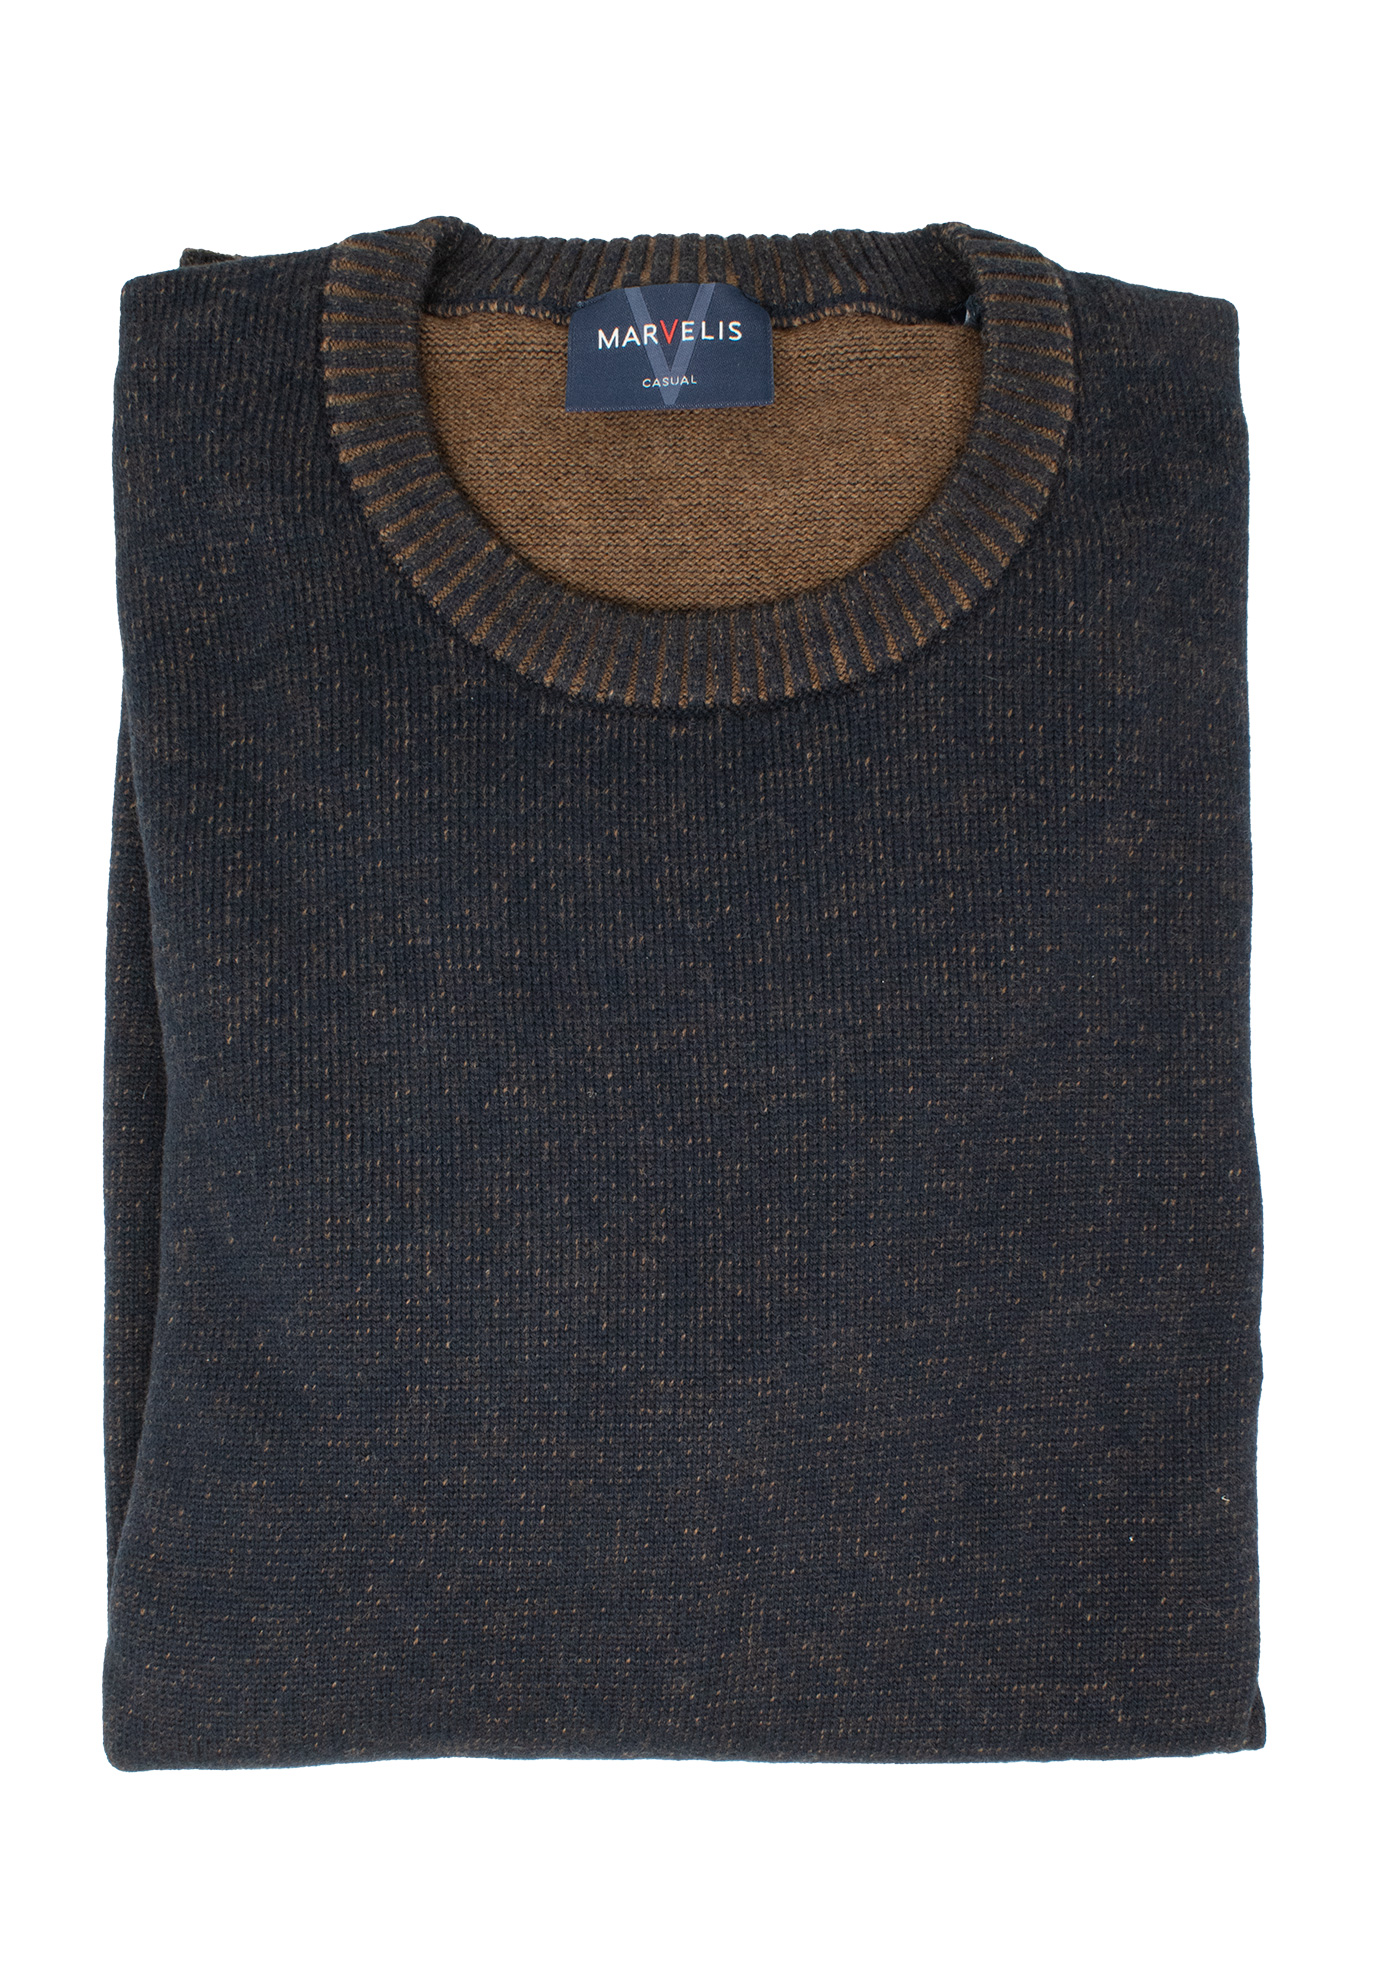 Пуловер MARVELIS, цвет Dunkelblau/Cognac жакет на пуговицах marvelis marvelis размер xl цвет серый арт 63151660